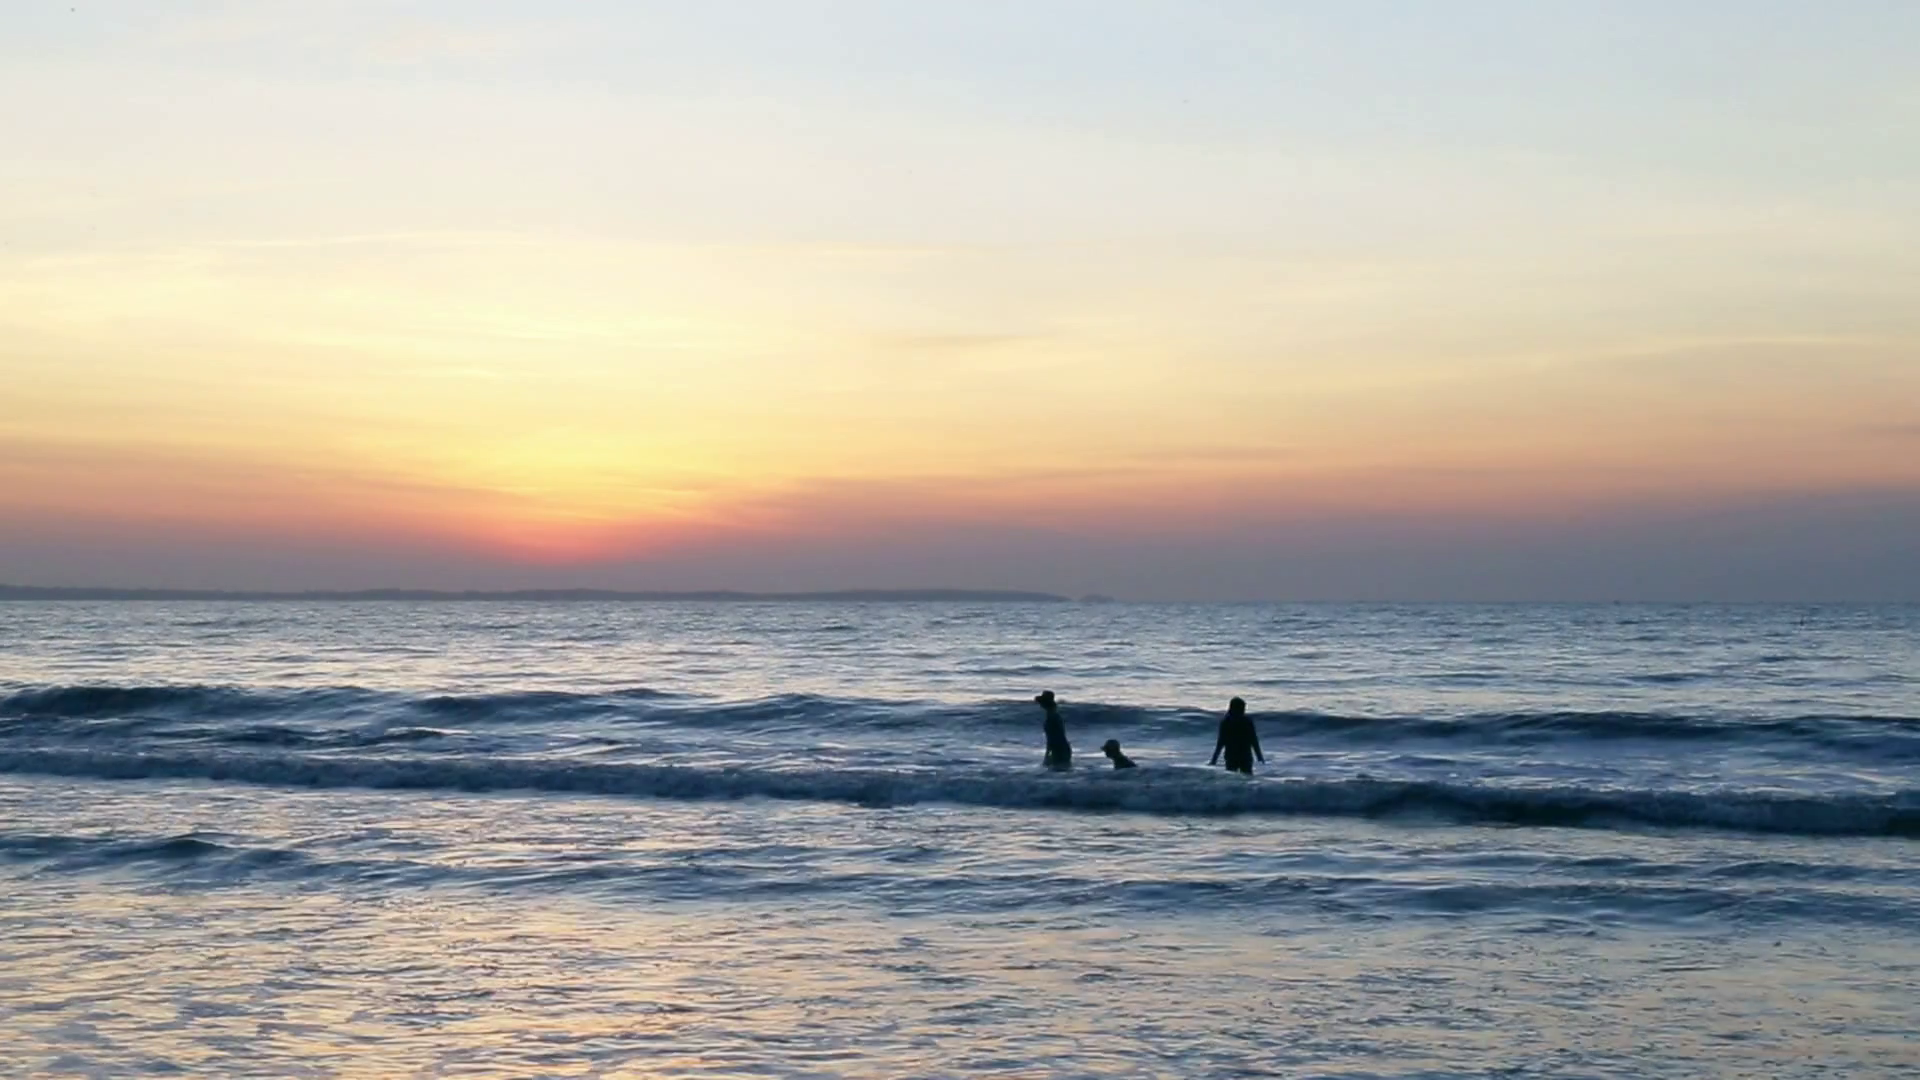 Family swim in ocean or sea. Sea scenery golden sunrise over horison ...